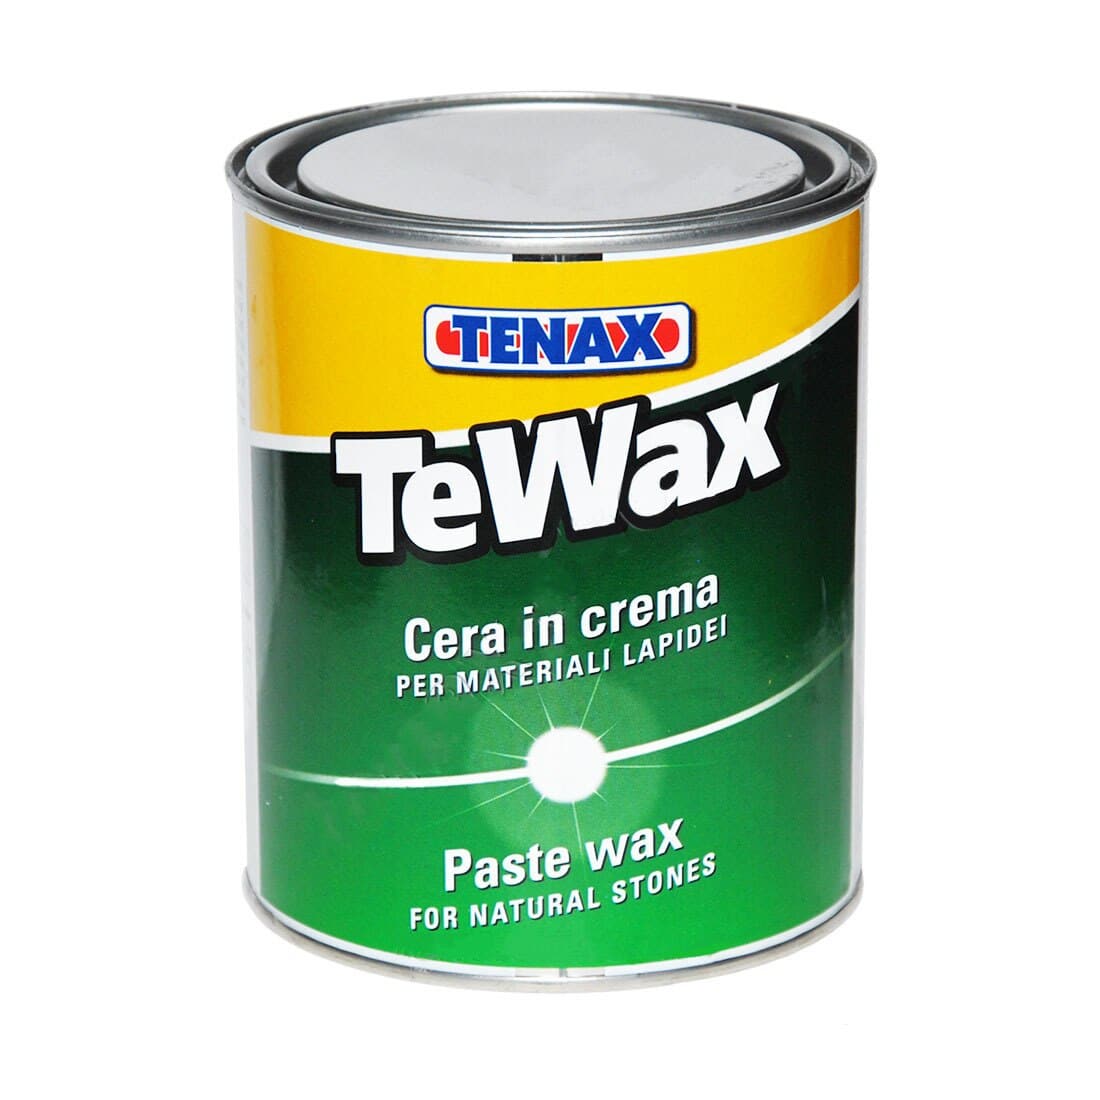 Tenax TeWax Paste Wax - Sale - Tenax